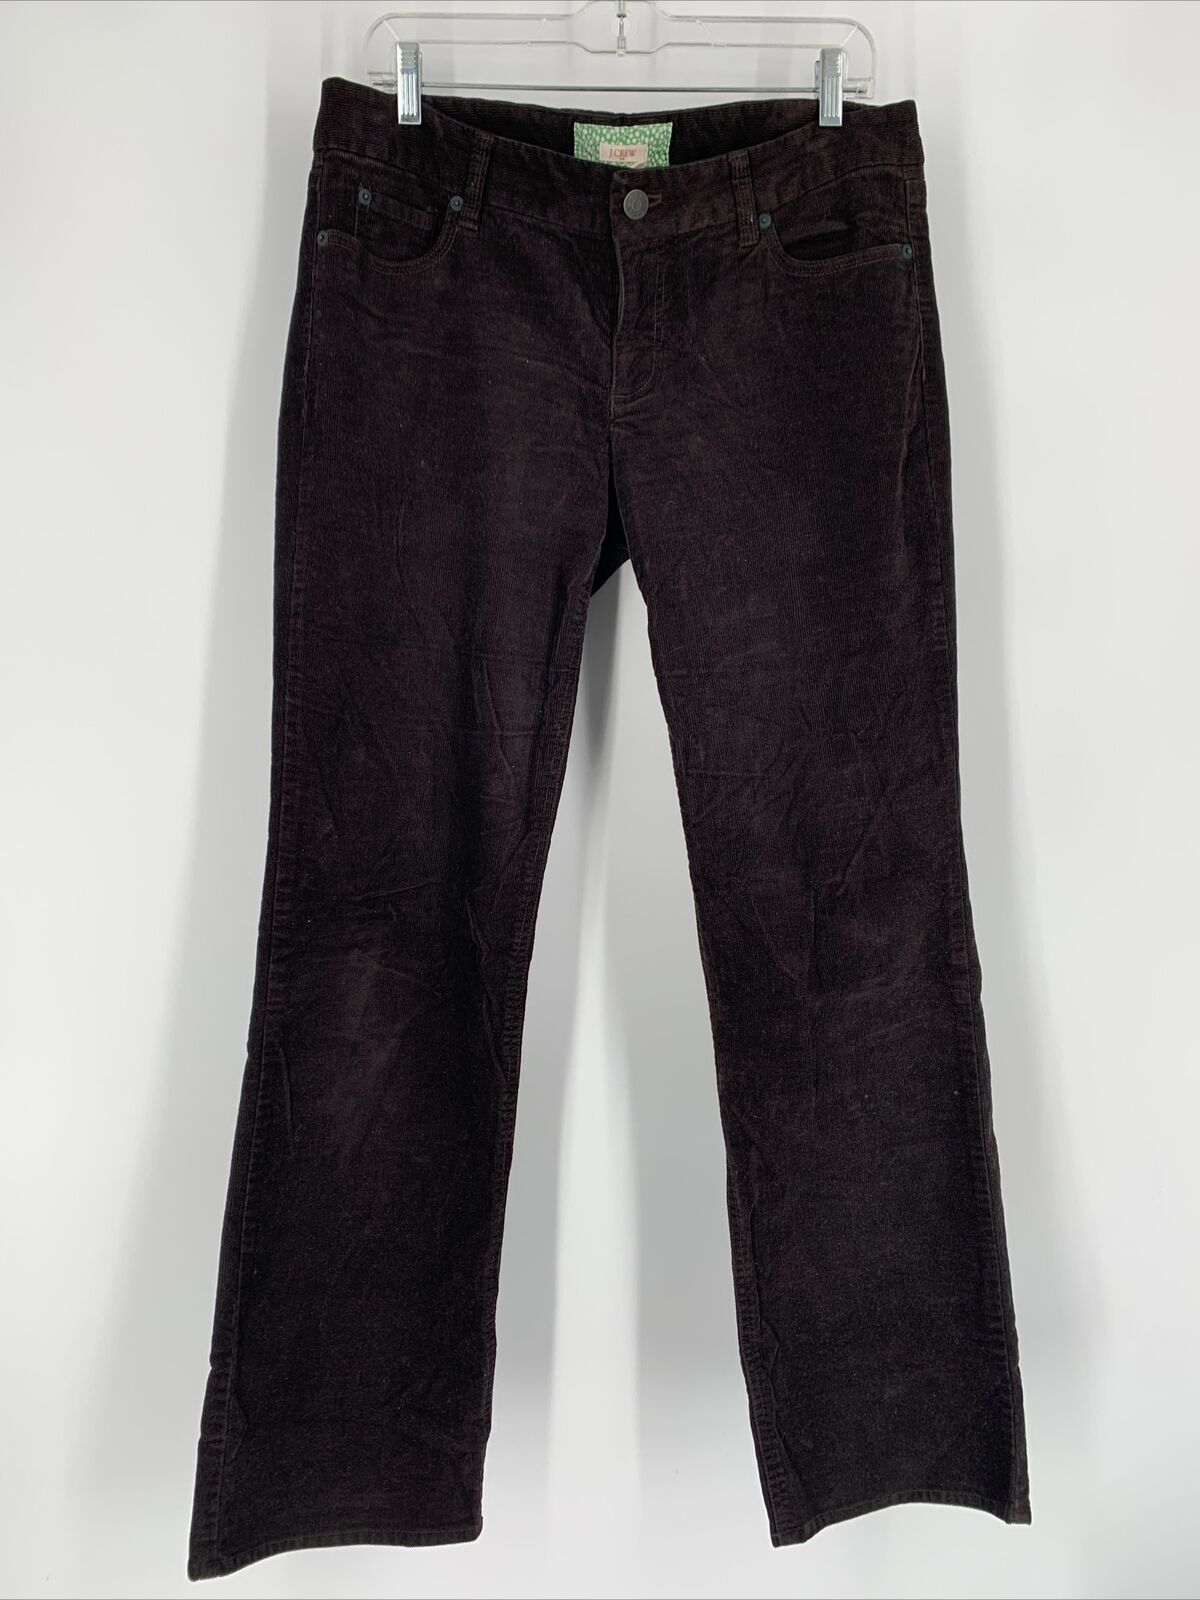 J Crew Corduroy Pants Women 10 Black Five Pocket … - image 1